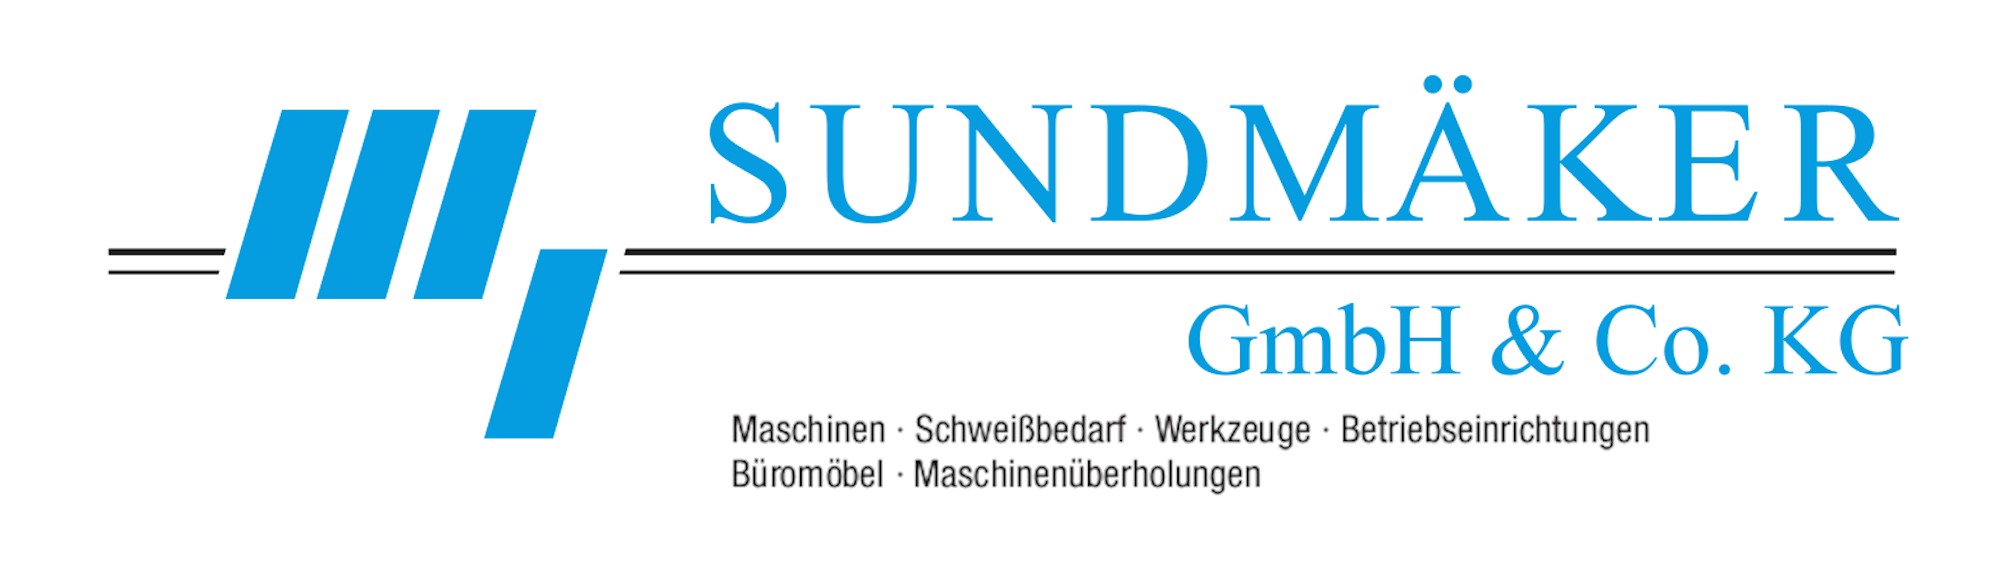 SUNDMÄKER GmbH & Co. KG